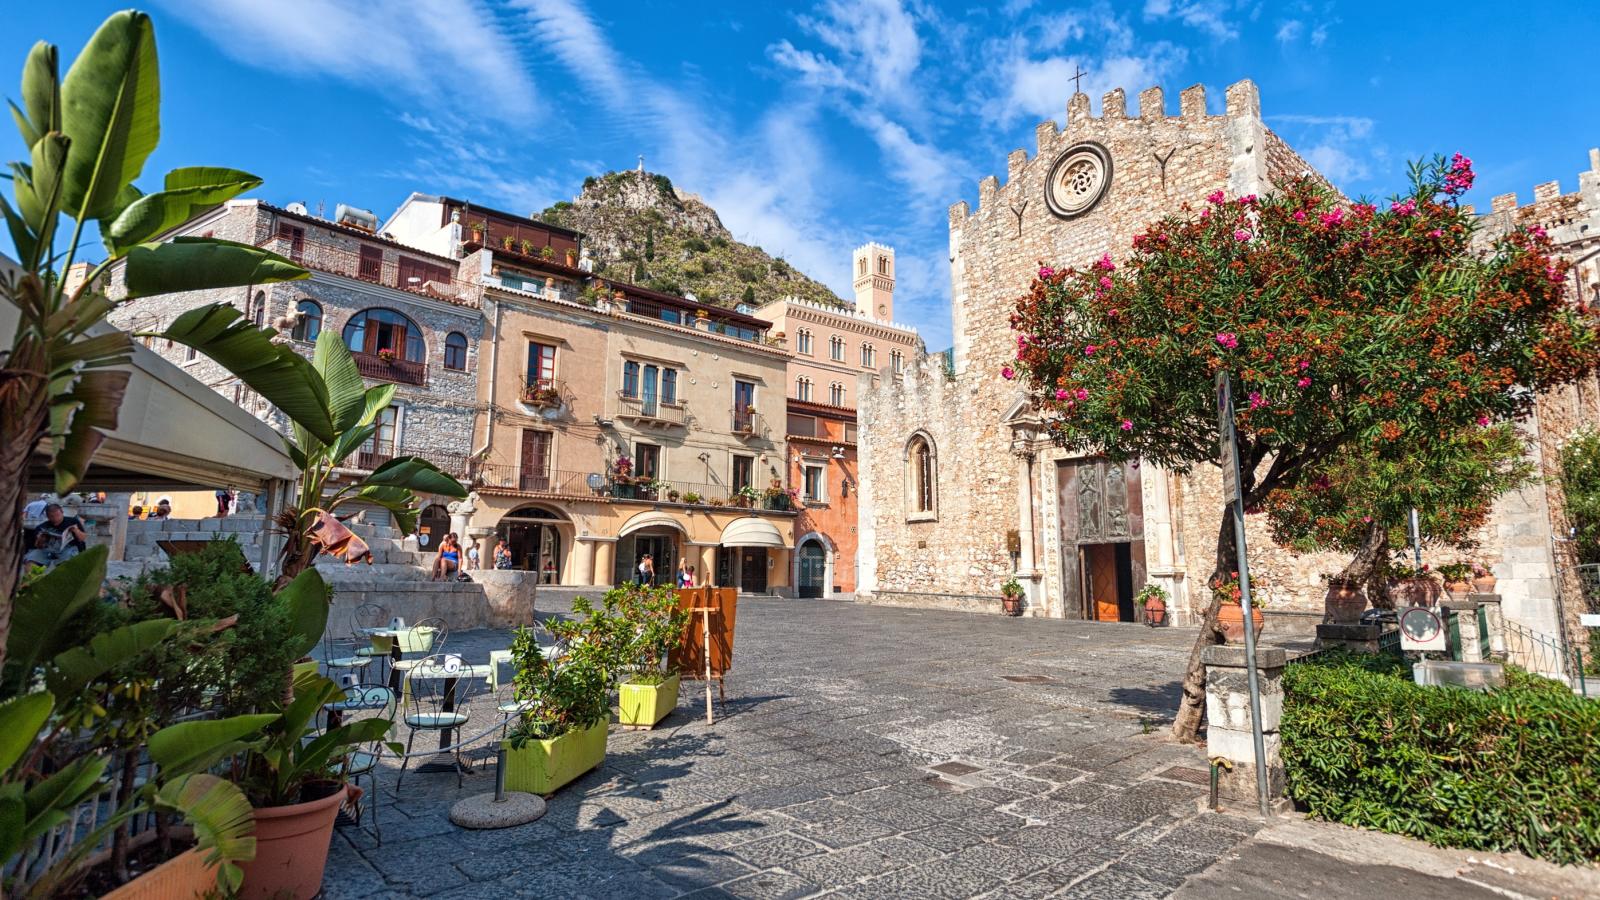 For sale apartment in city Taormina Sicilia